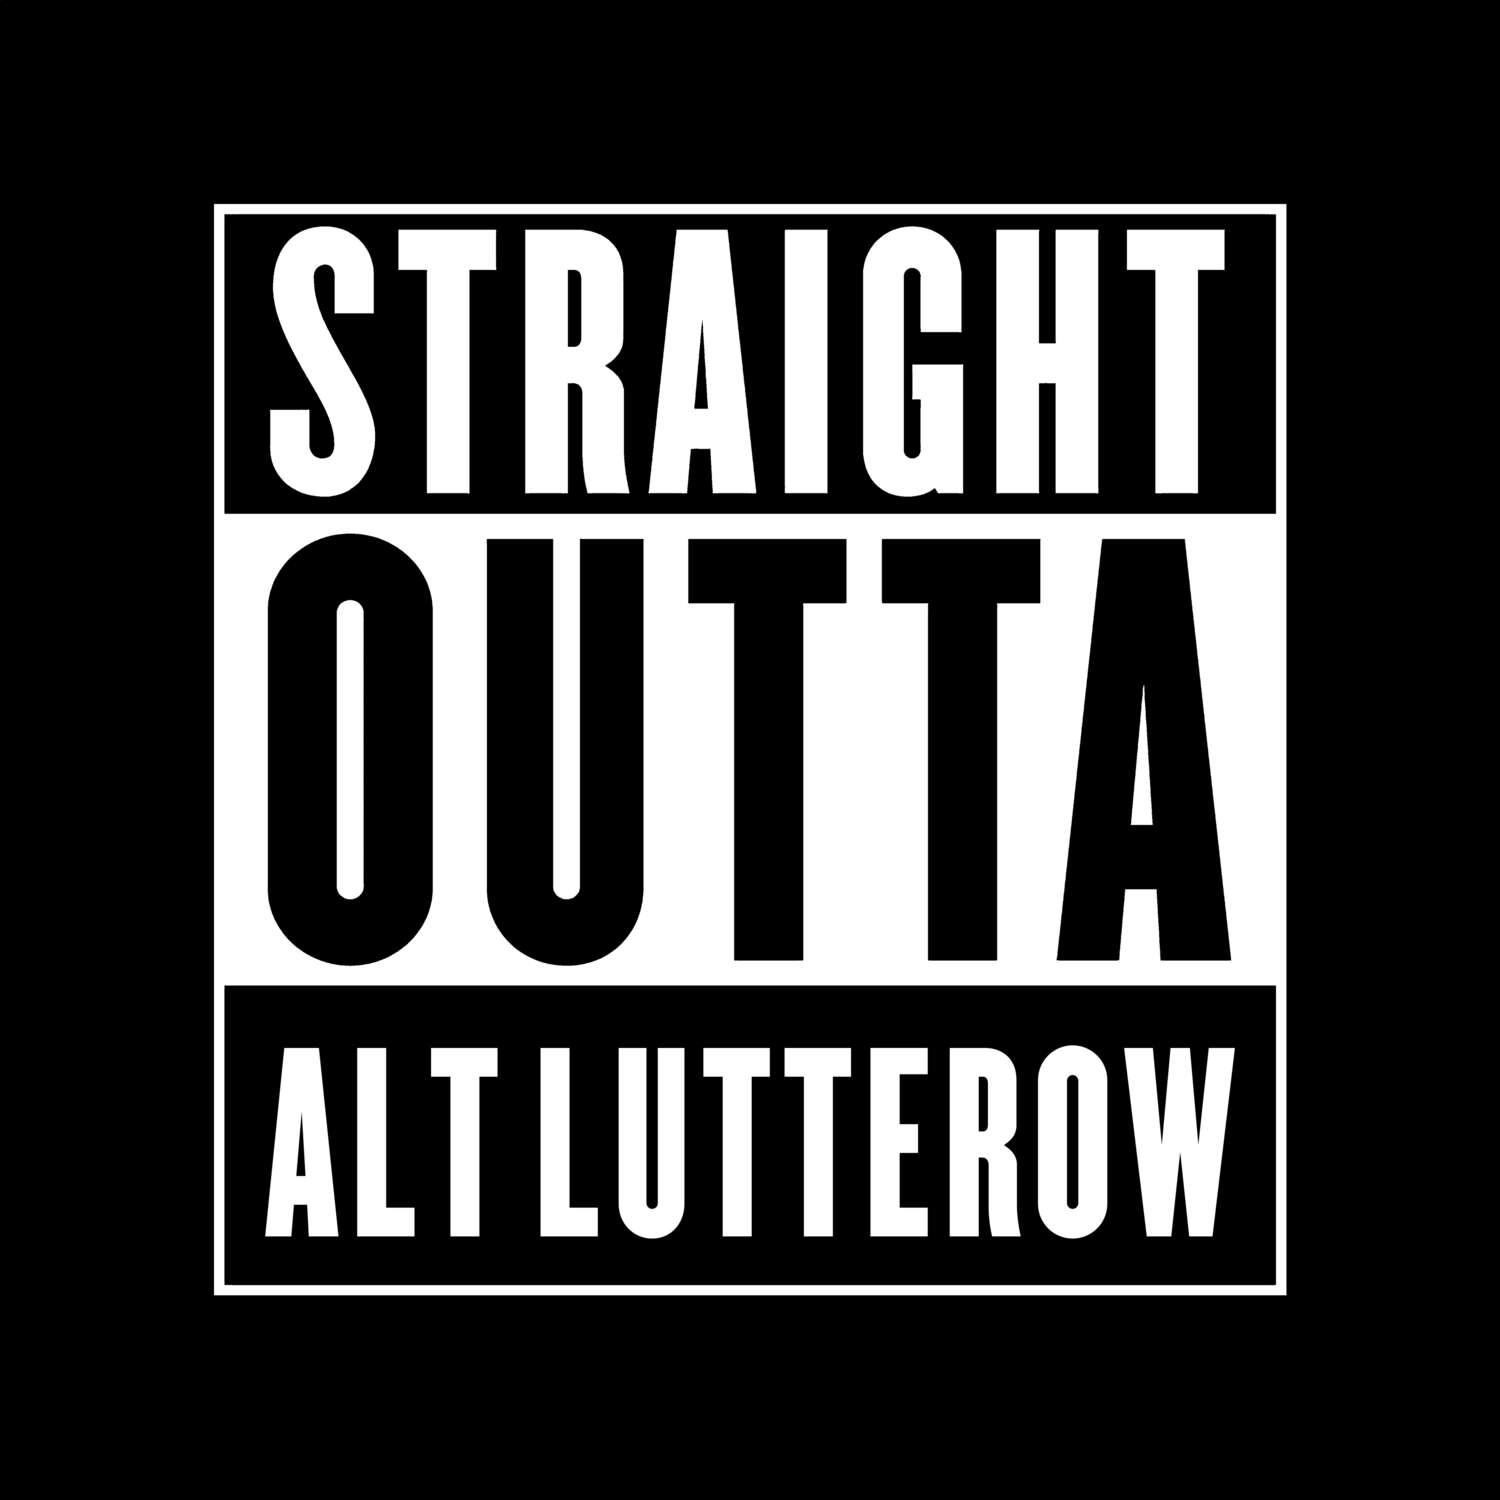 Alt Lutterow T-Shirt »Straight Outta«